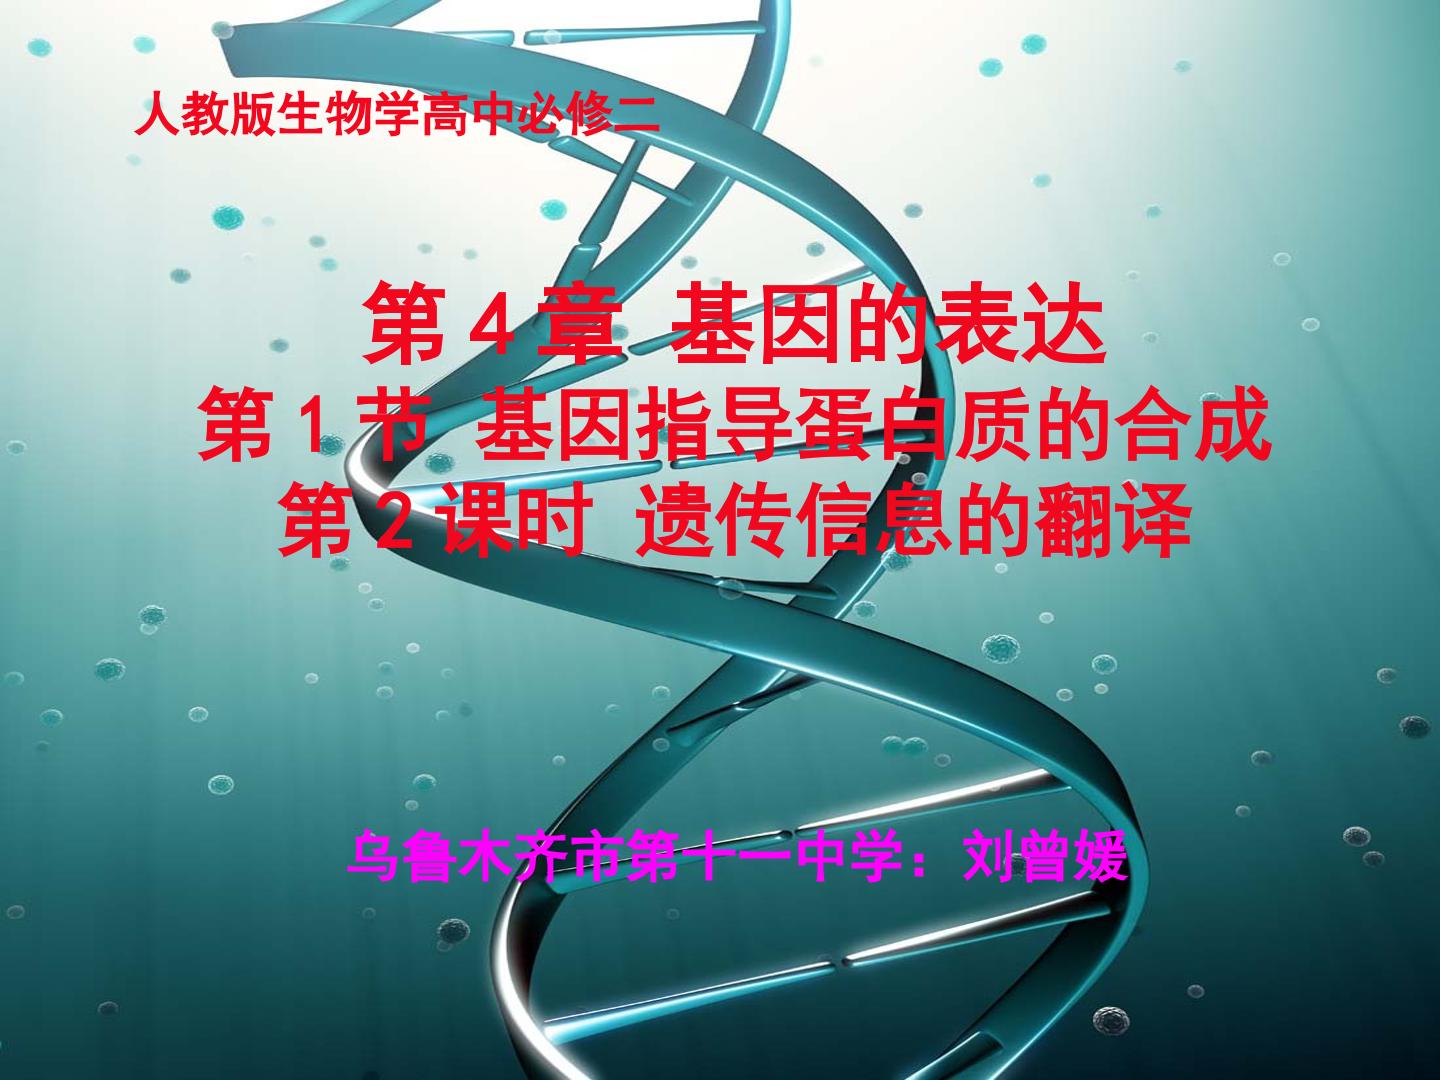 基因指导蛋白质的合成—翻译过程